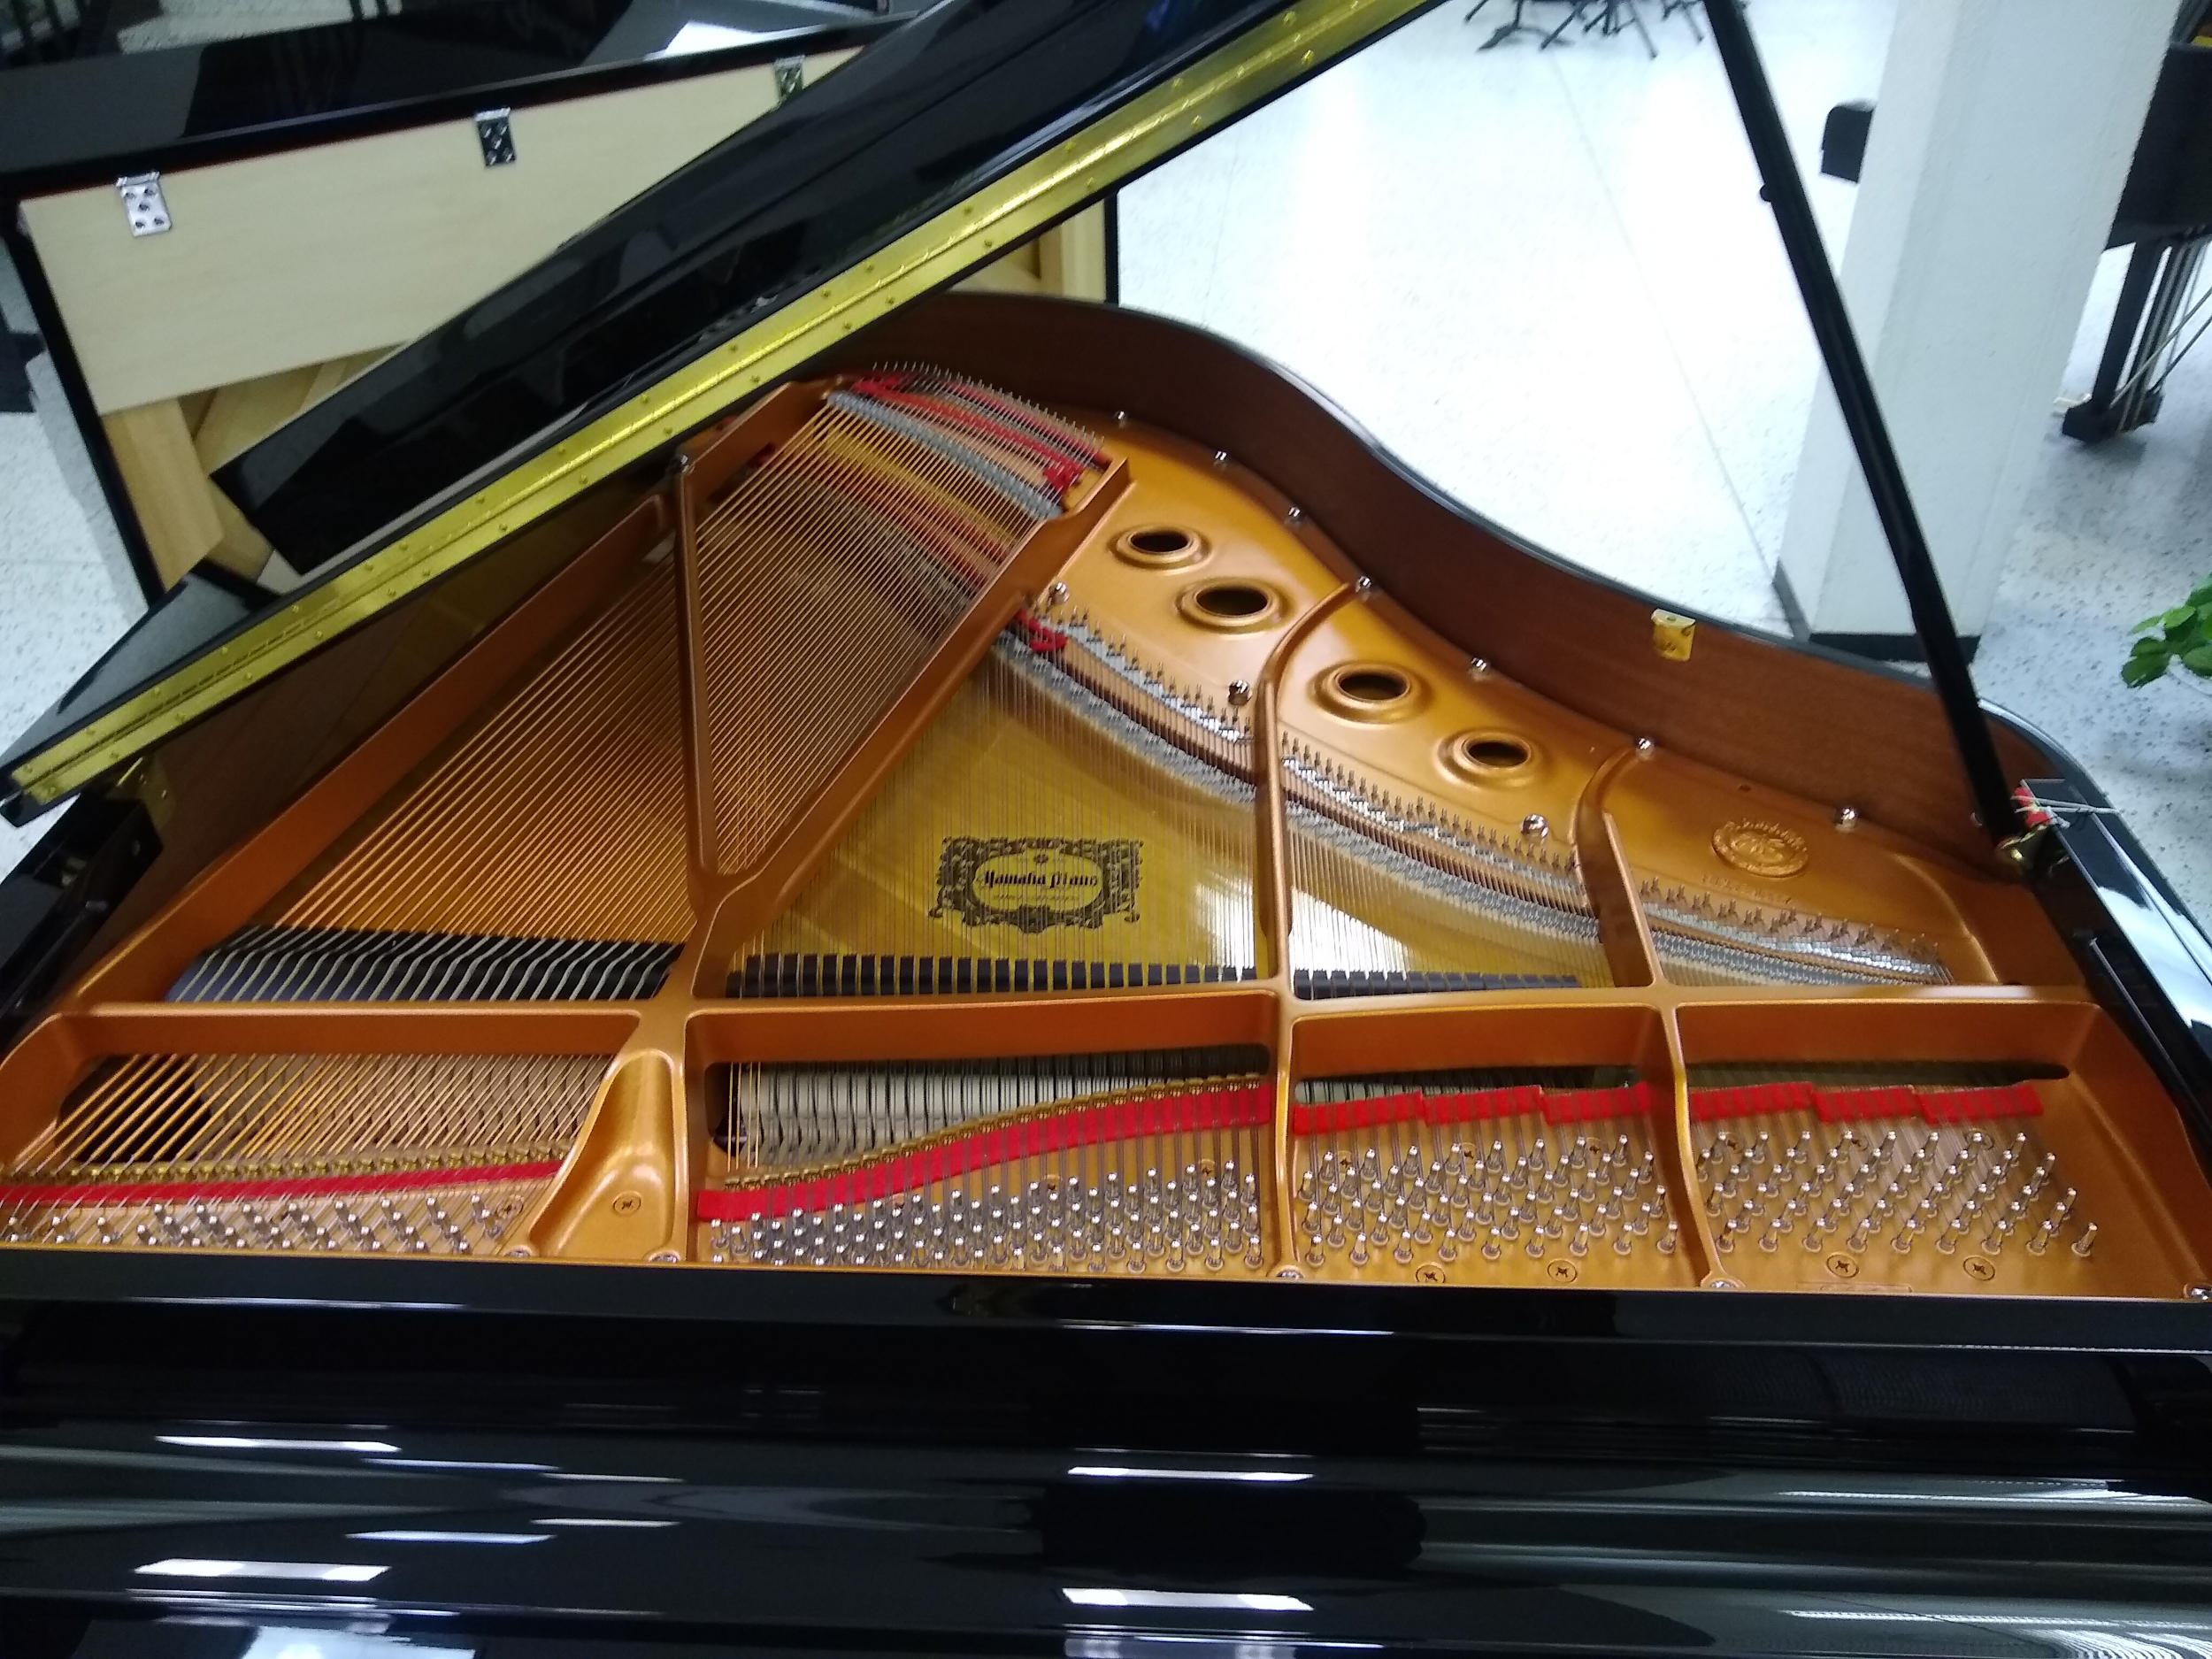 Yamaha GC2 Grand Piano